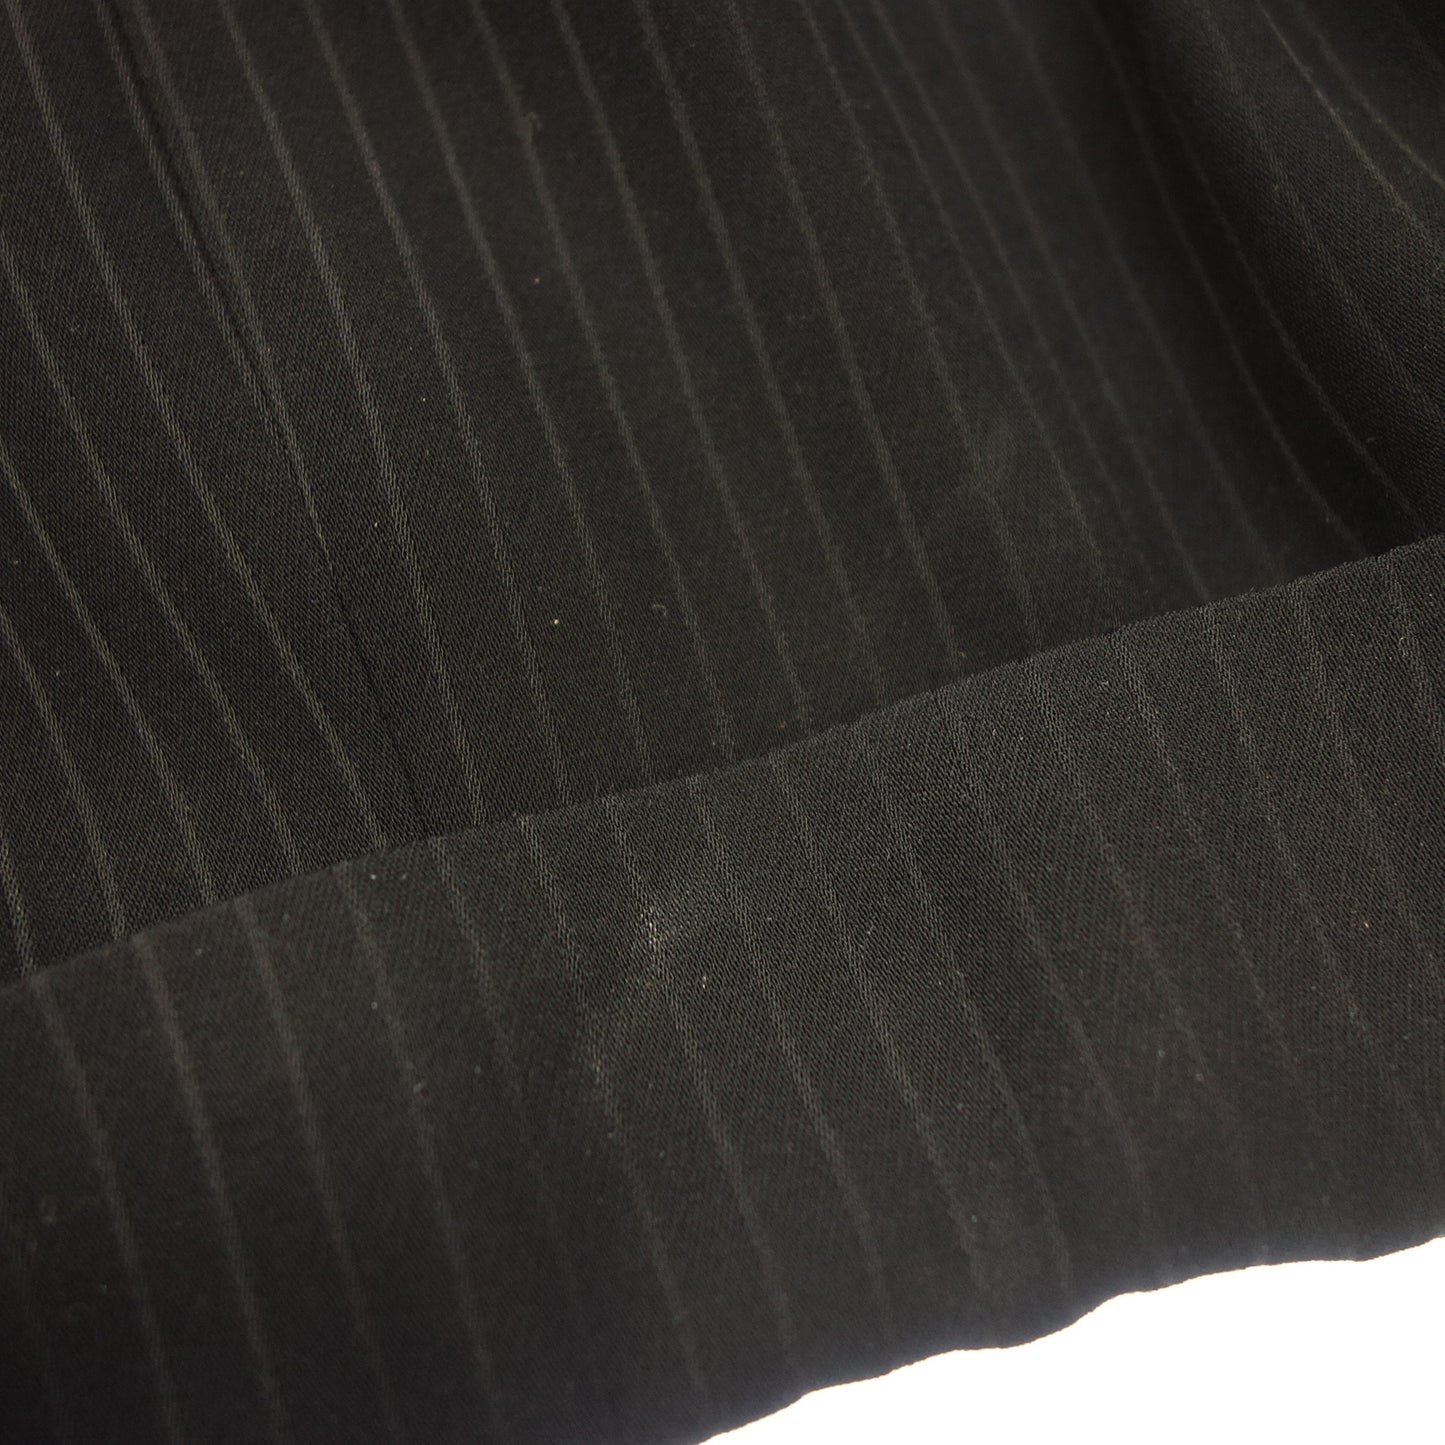 品相良好◆乔治阿玛尼西装套装黑色条纹尺寸 46 男式 GIORGIO ARMANI [AFA10] 